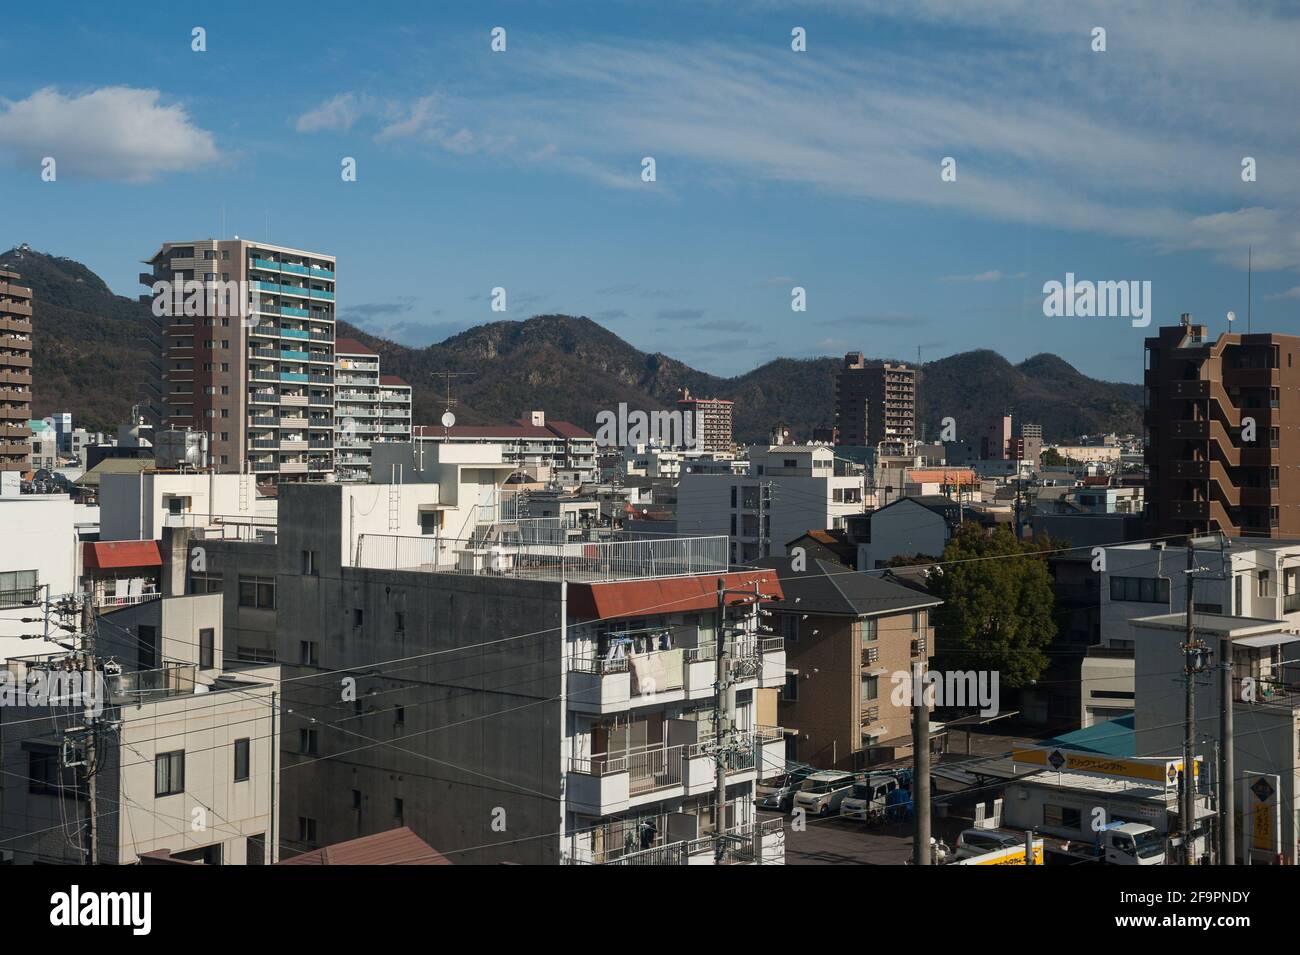 30.12.2017, Gifu, Gifu, Japan - ein erhöhter Blick auf die Stadt mit Gebäuden im Stadtzentrum und Bergen im Hintergrund. 0SL171230D043CAROEX.JPG [MODUS Stockfoto